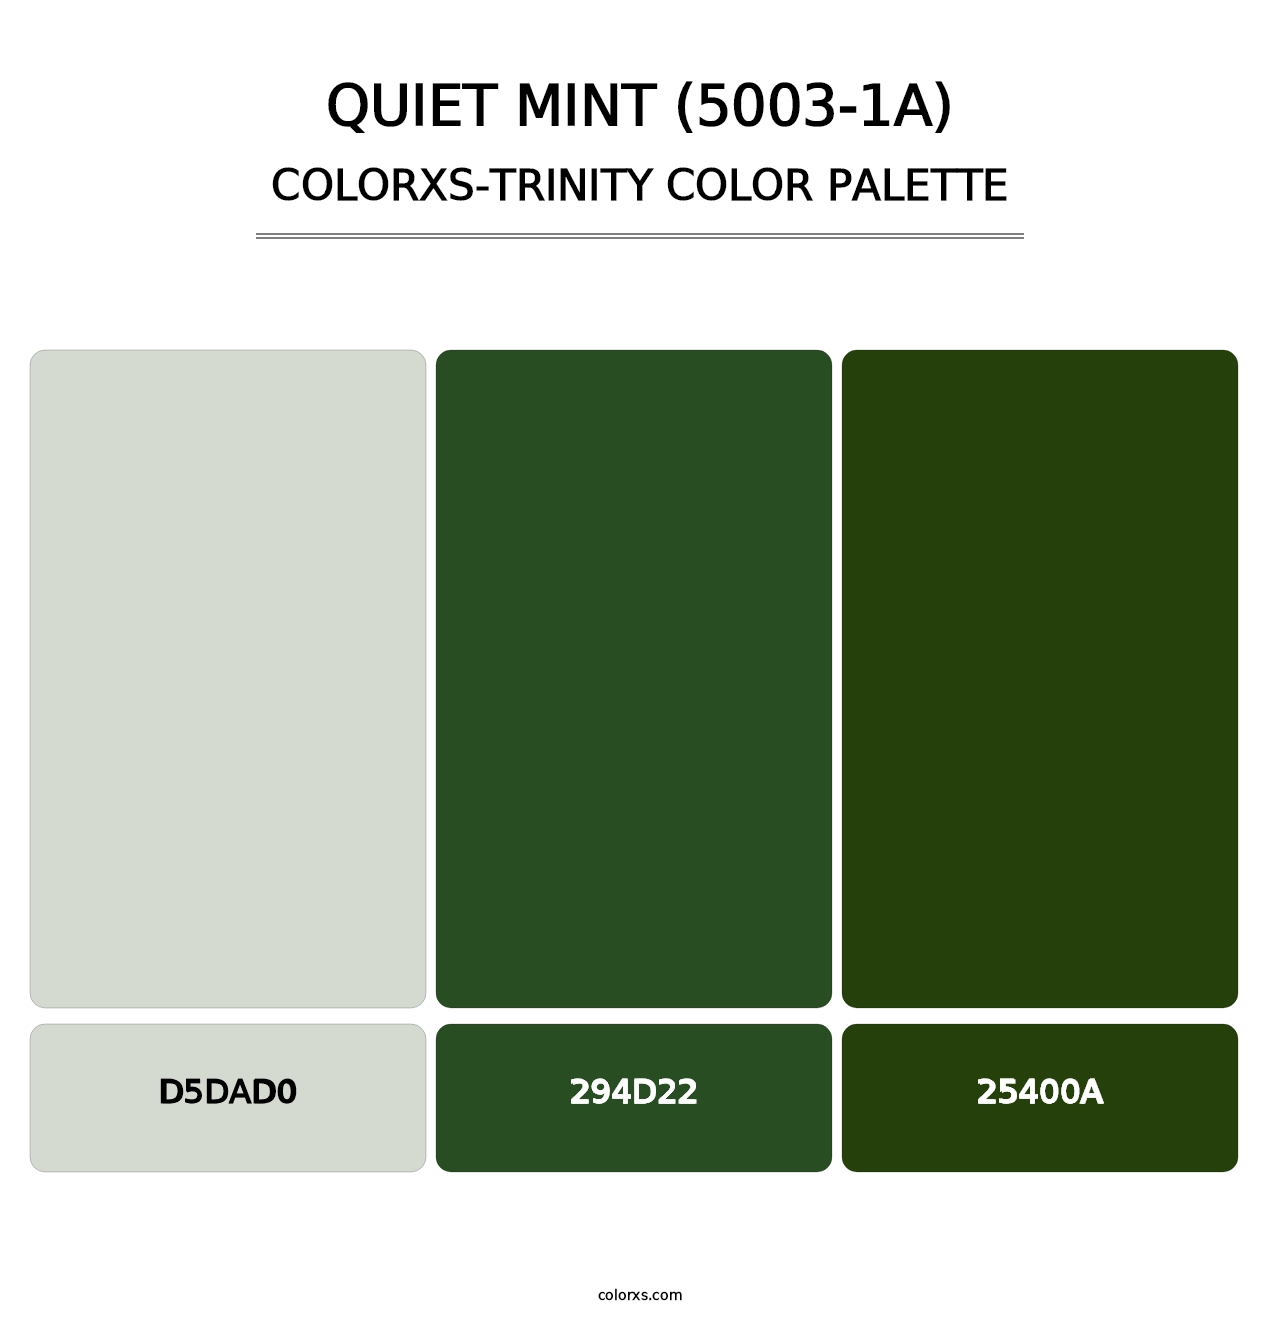 Quiet Mint (5003-1A) - Colorxs Trinity Palette